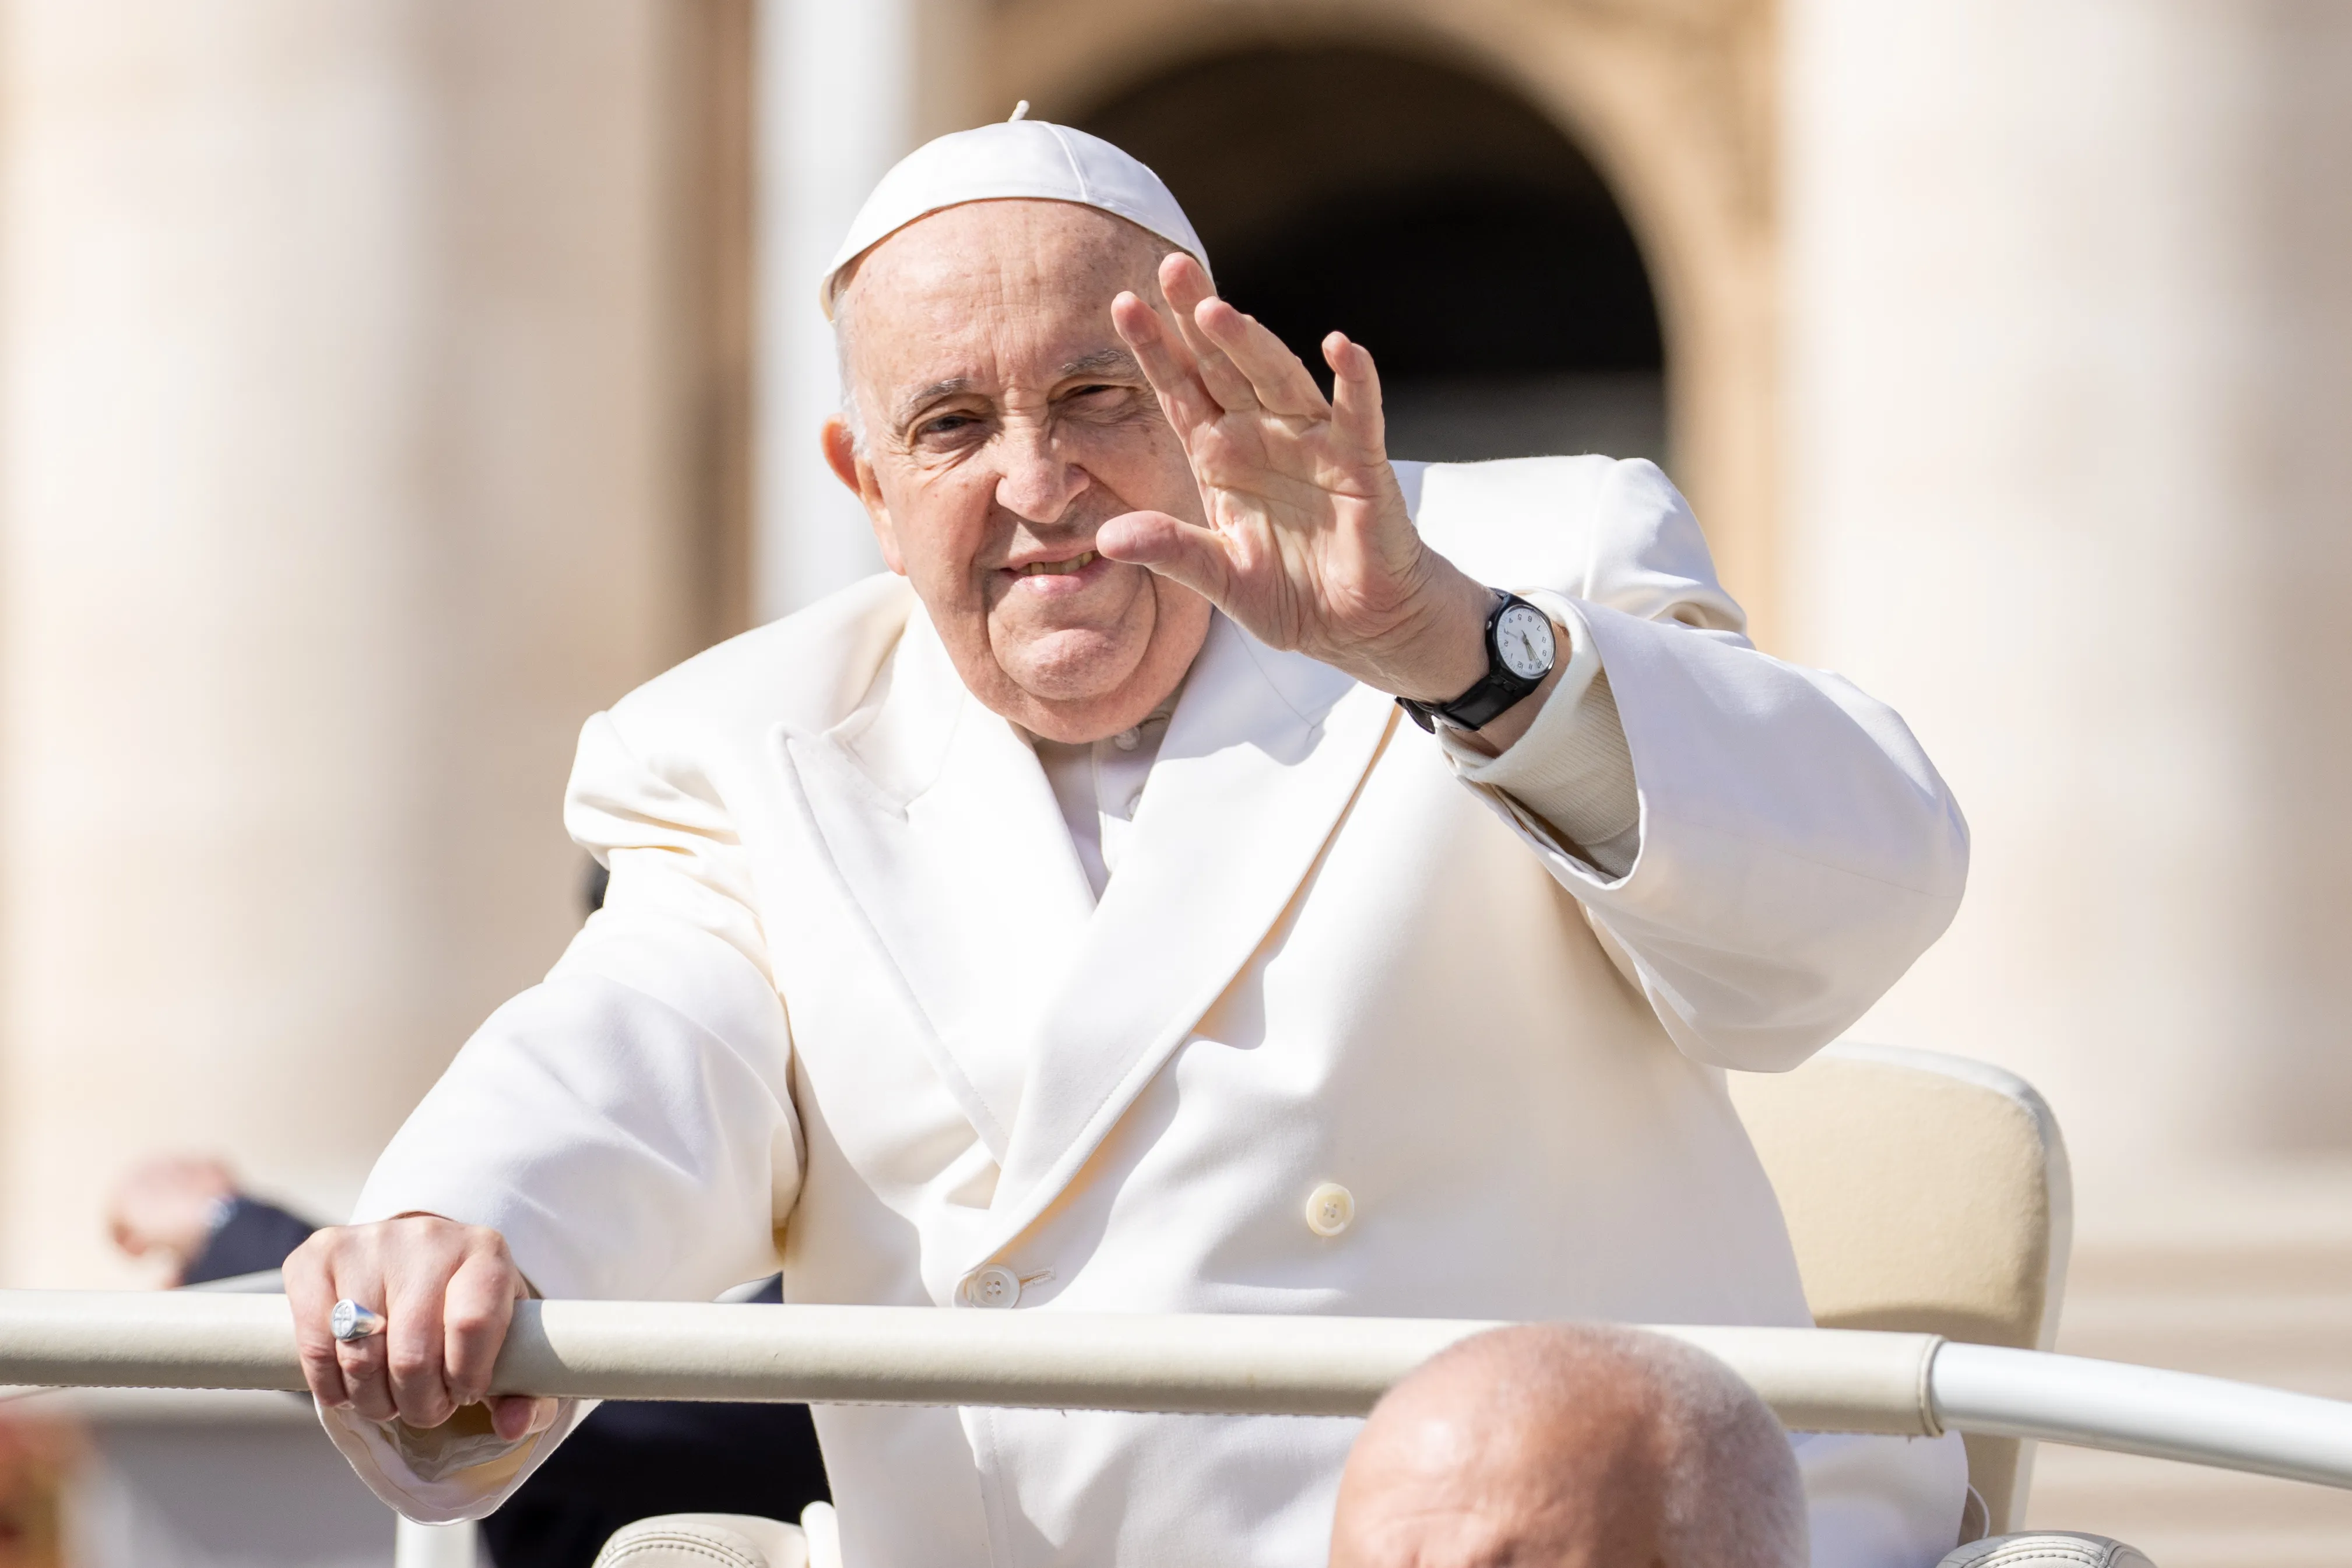 El Papa Francisco saluda a los fieles durante una audiencia general en la Plaza de San Pedro.?w=200&h=150